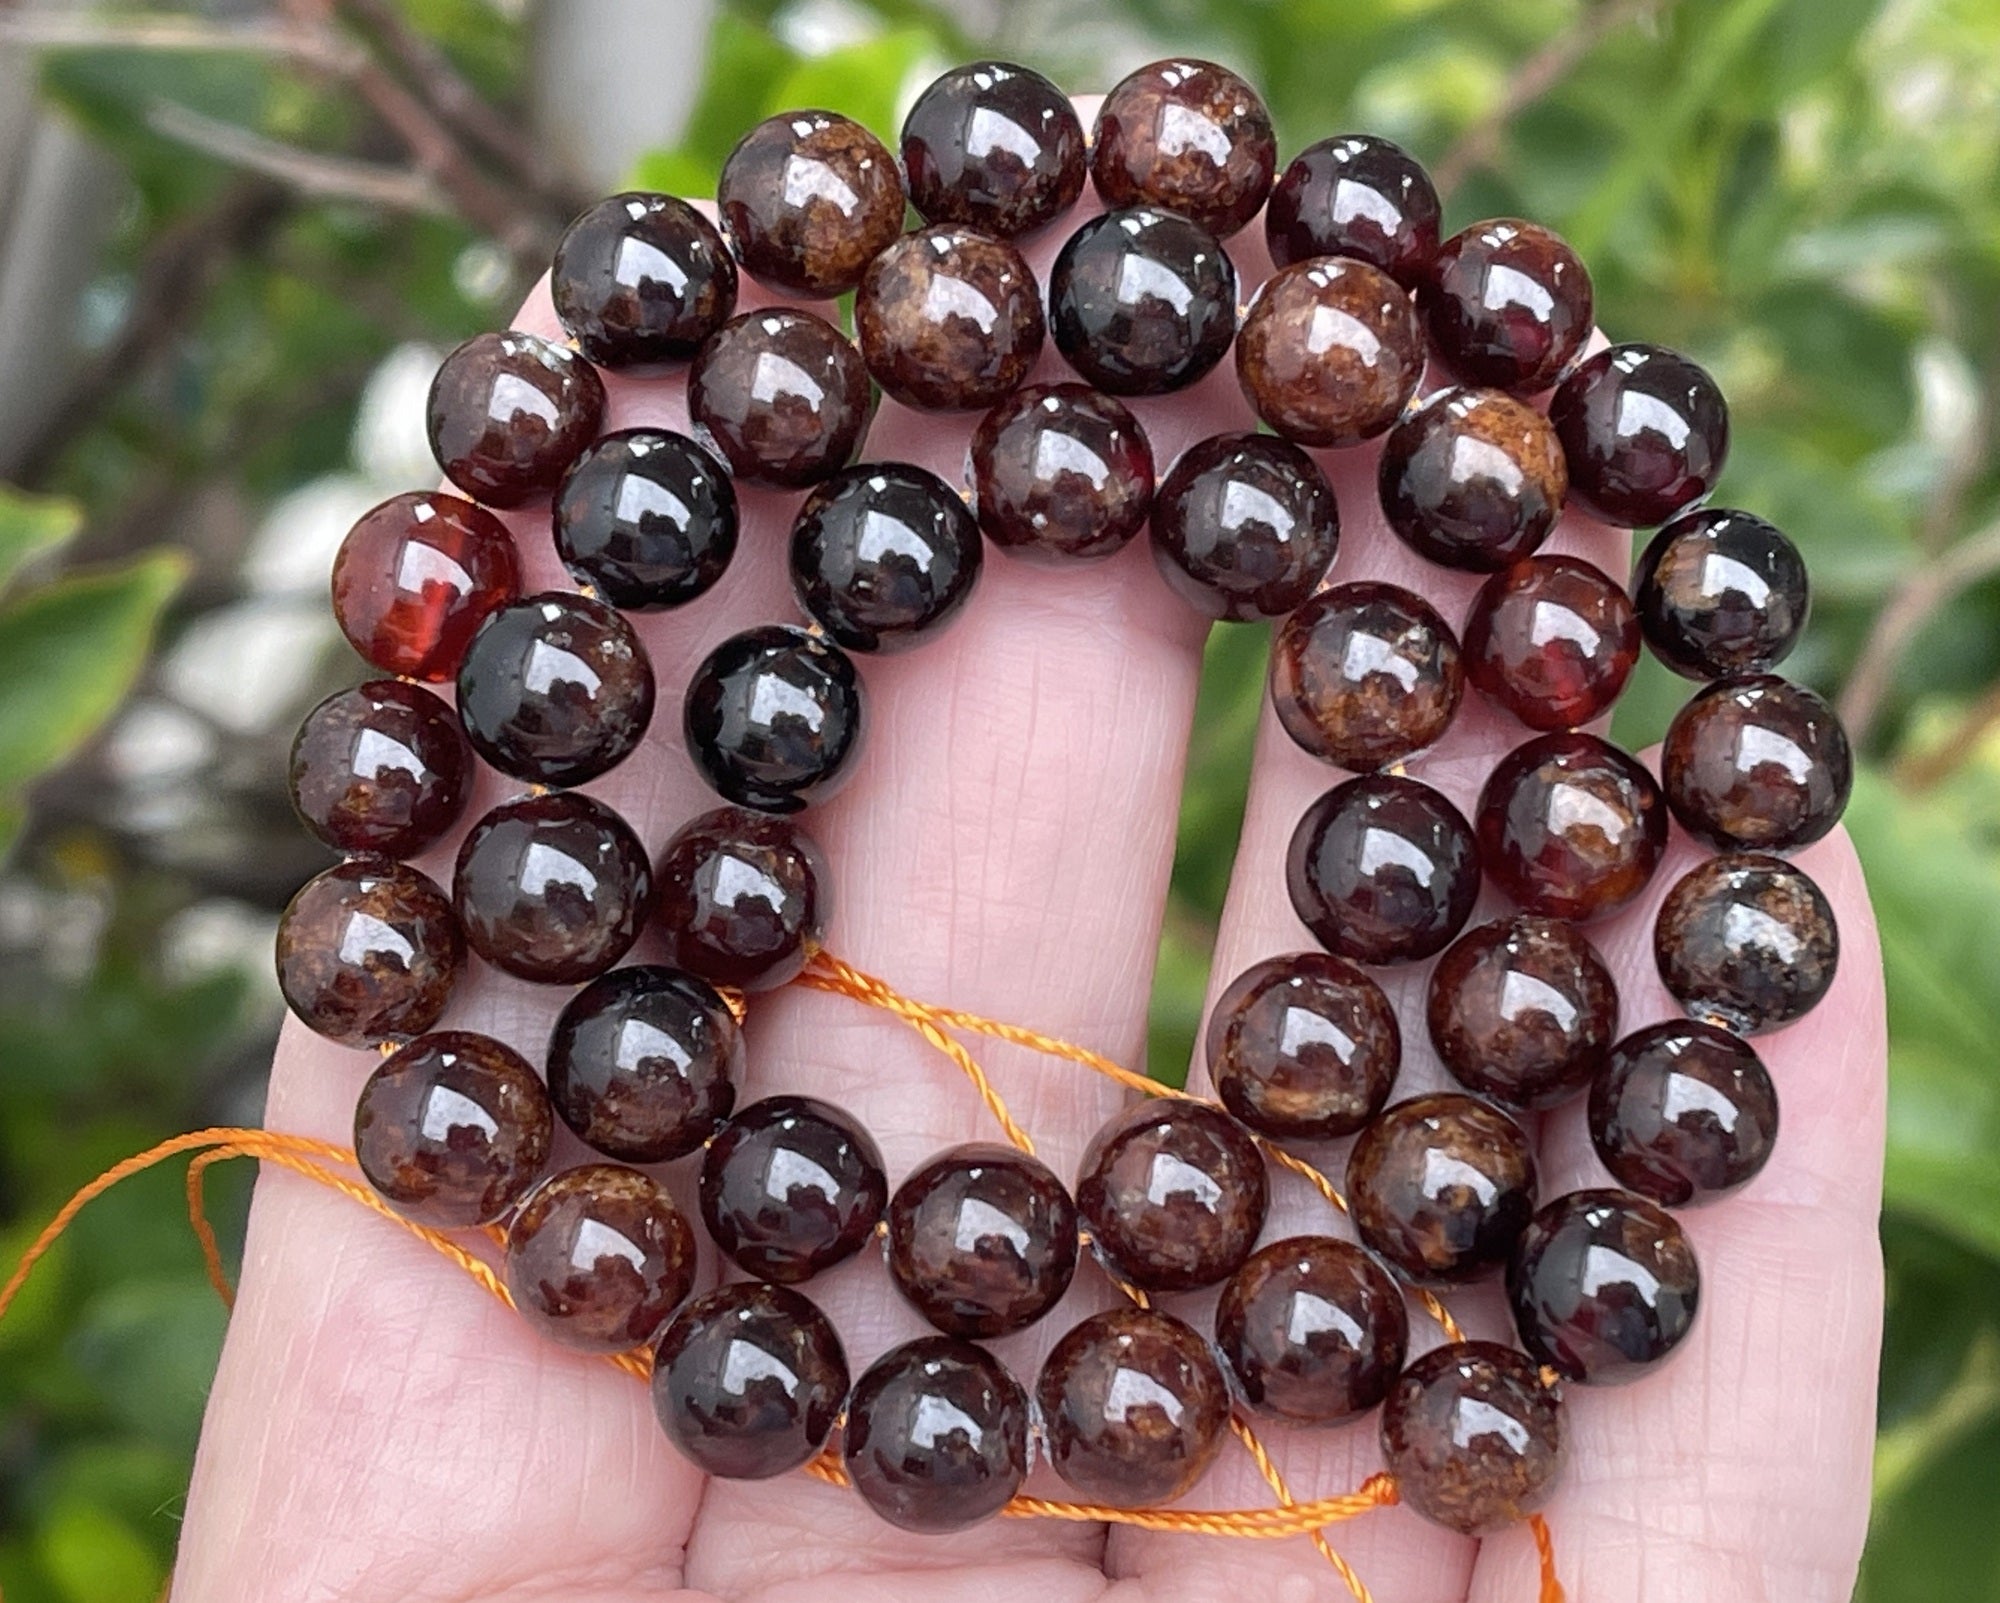 Orange Garnet 8mm round natural gemstone beads 15" strand